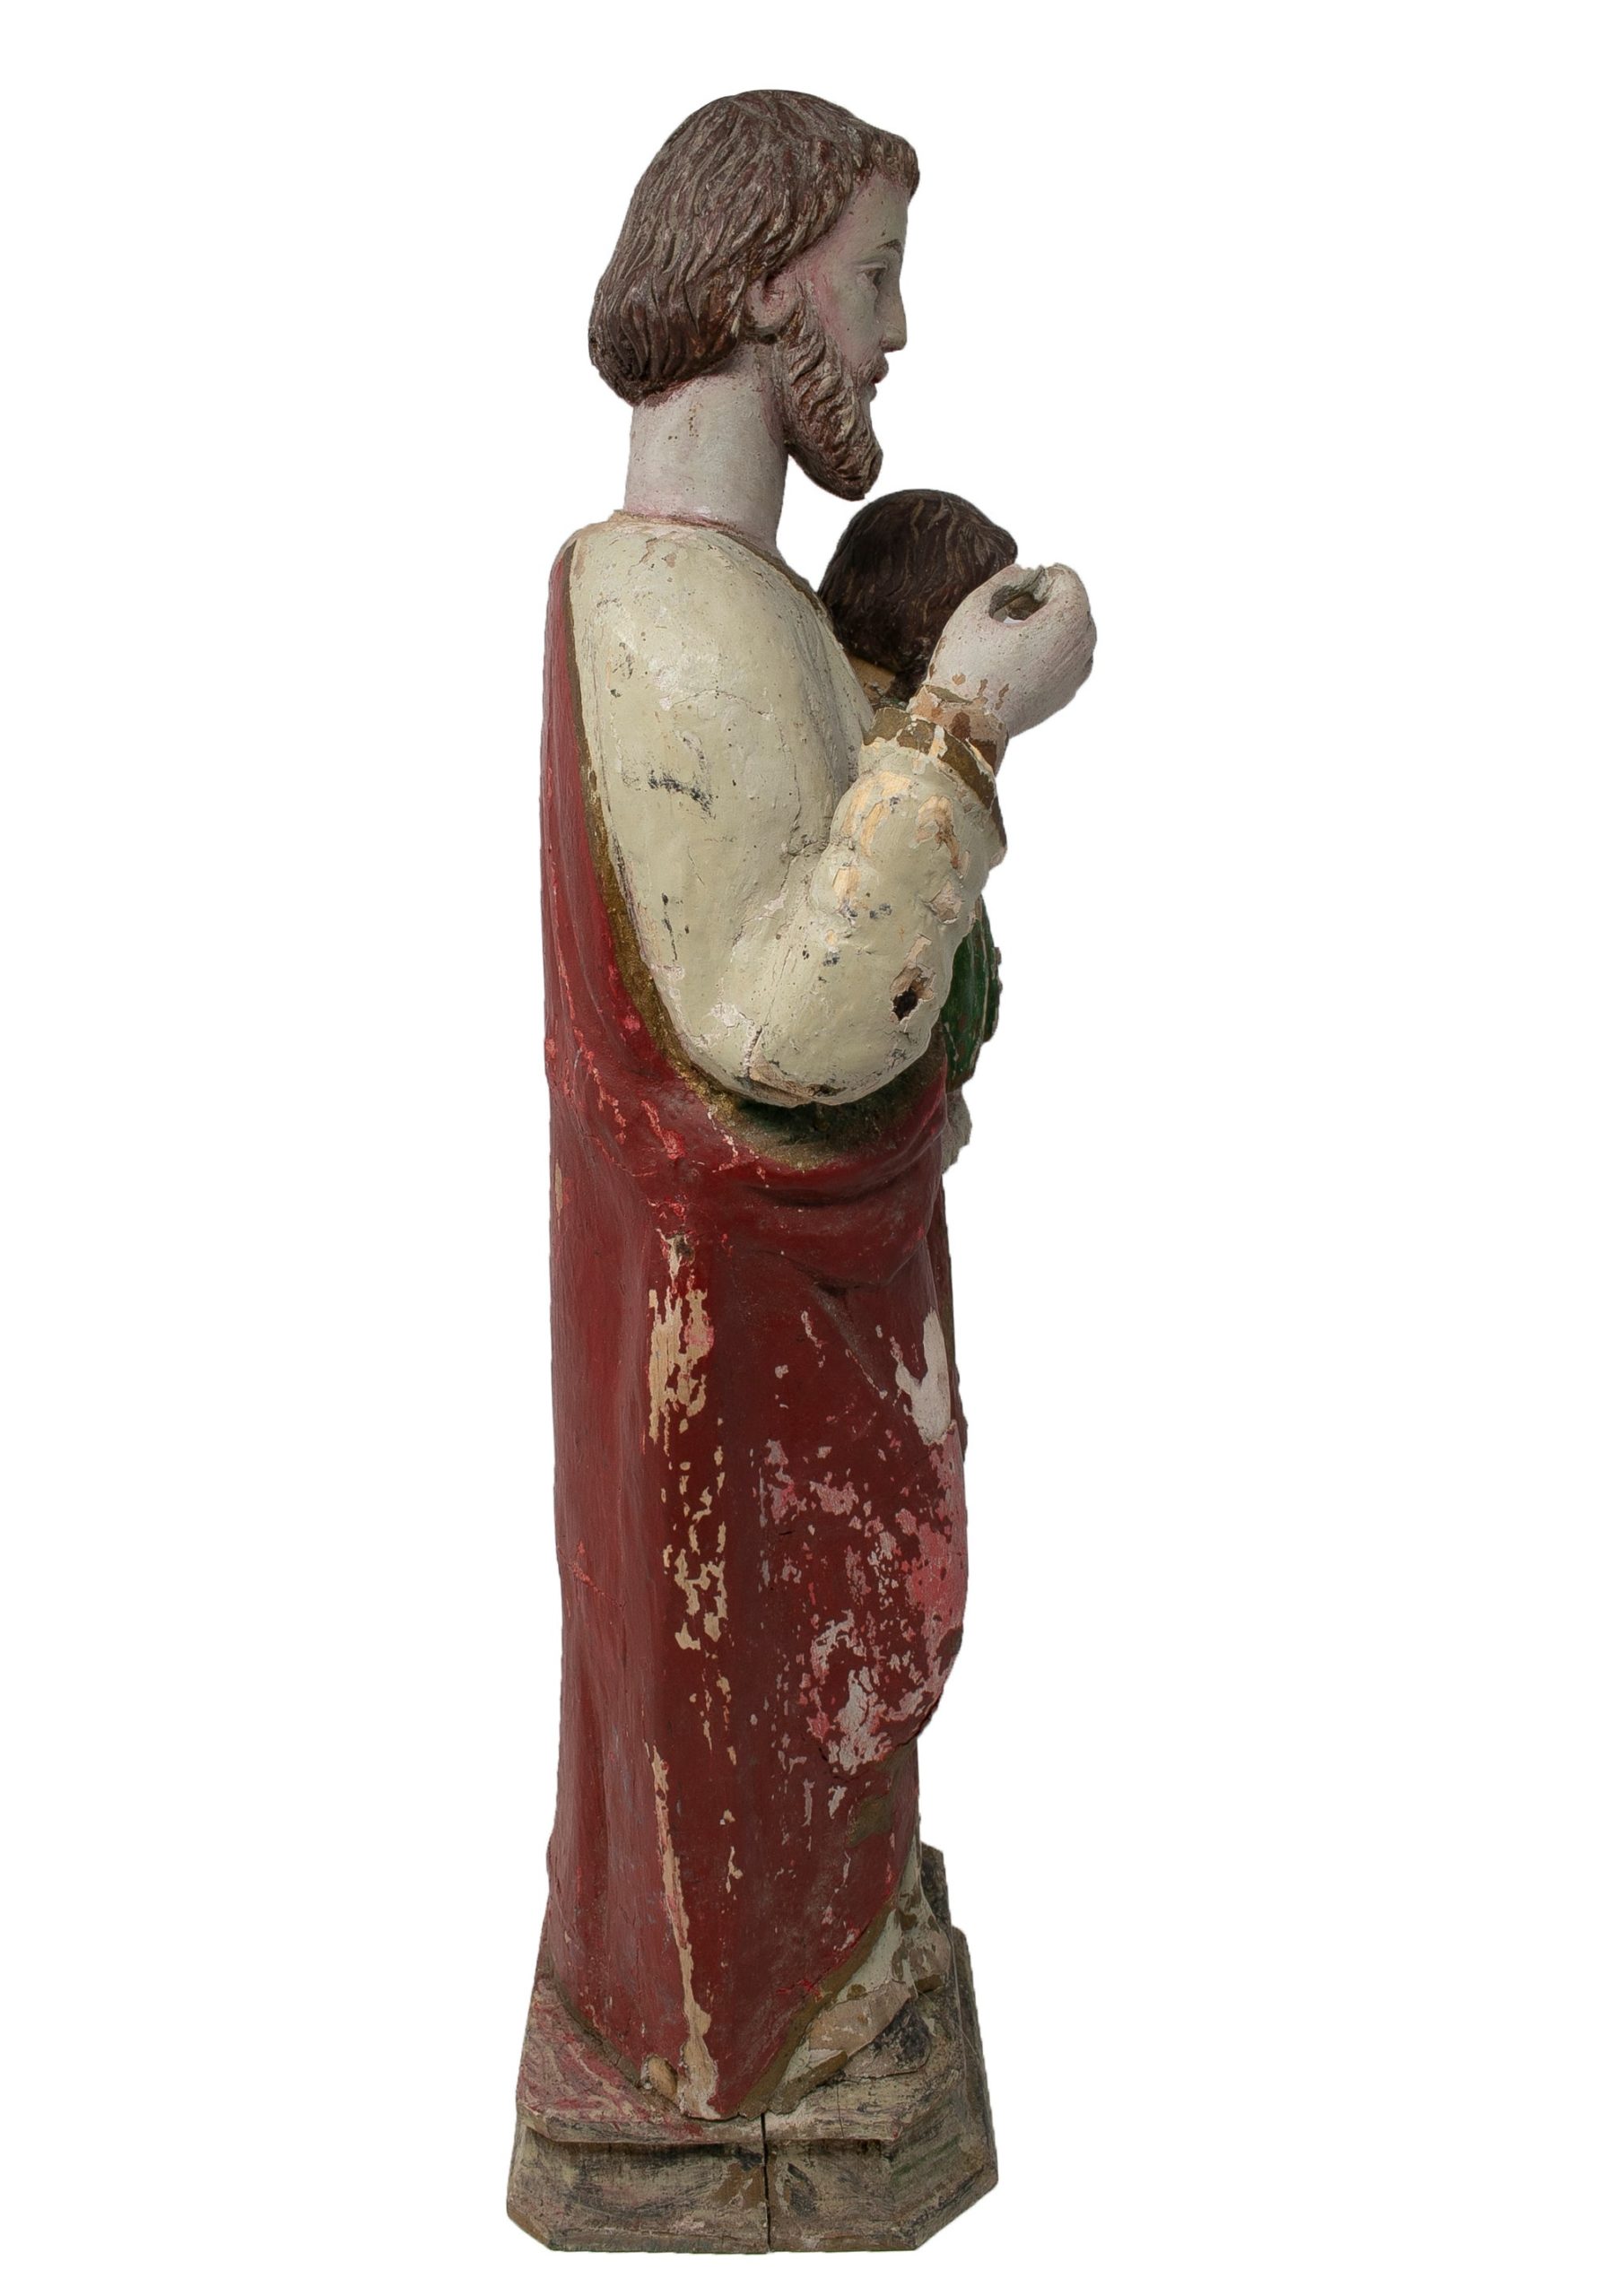 Escultura Figurativa Española de Madera Pintada, de Mediados del Siglo XIX